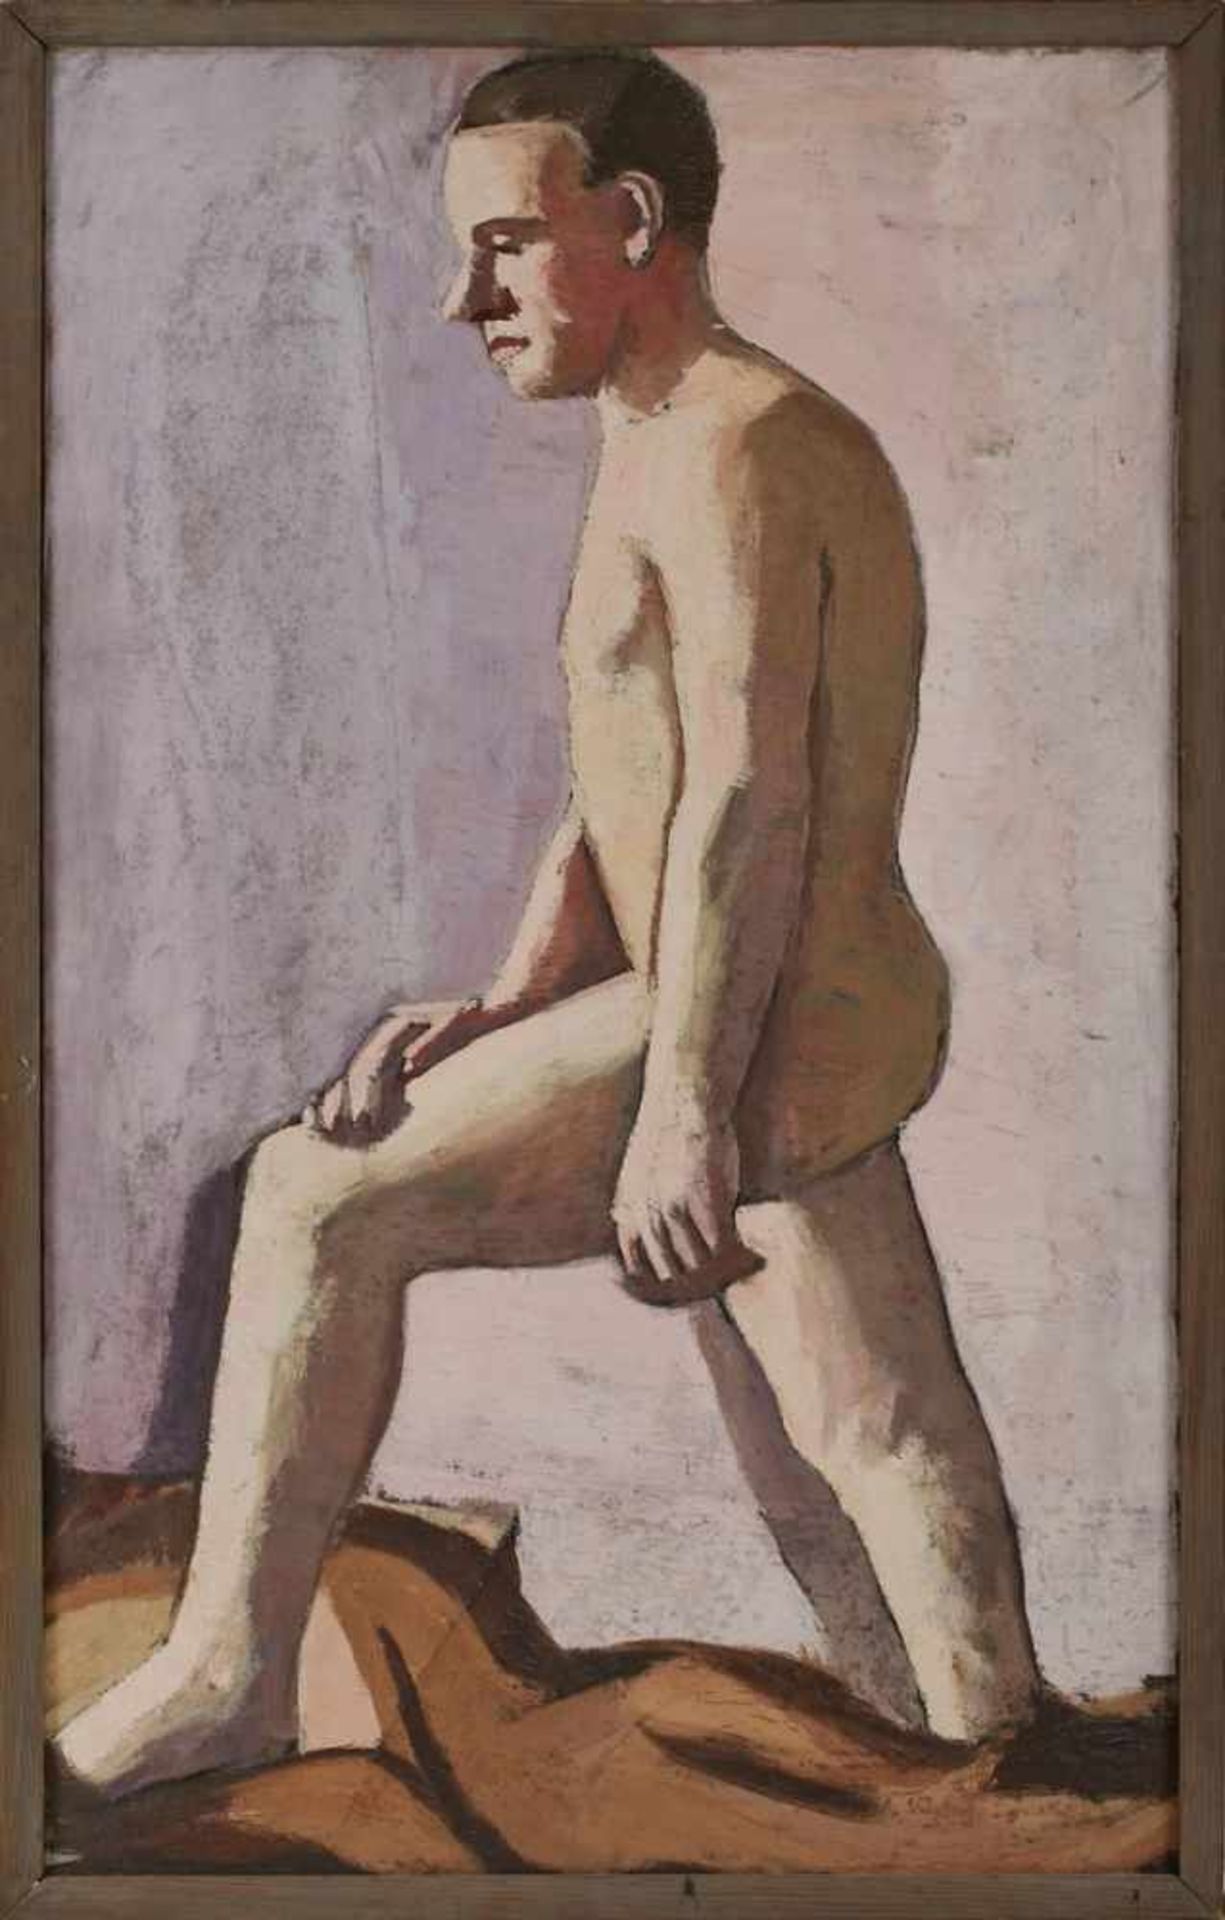 Gemälde Karl Tratt 1900 Sindlingen - 1937 Frankfurt "Stehender männlicher Akt" 1929 verso mit dem